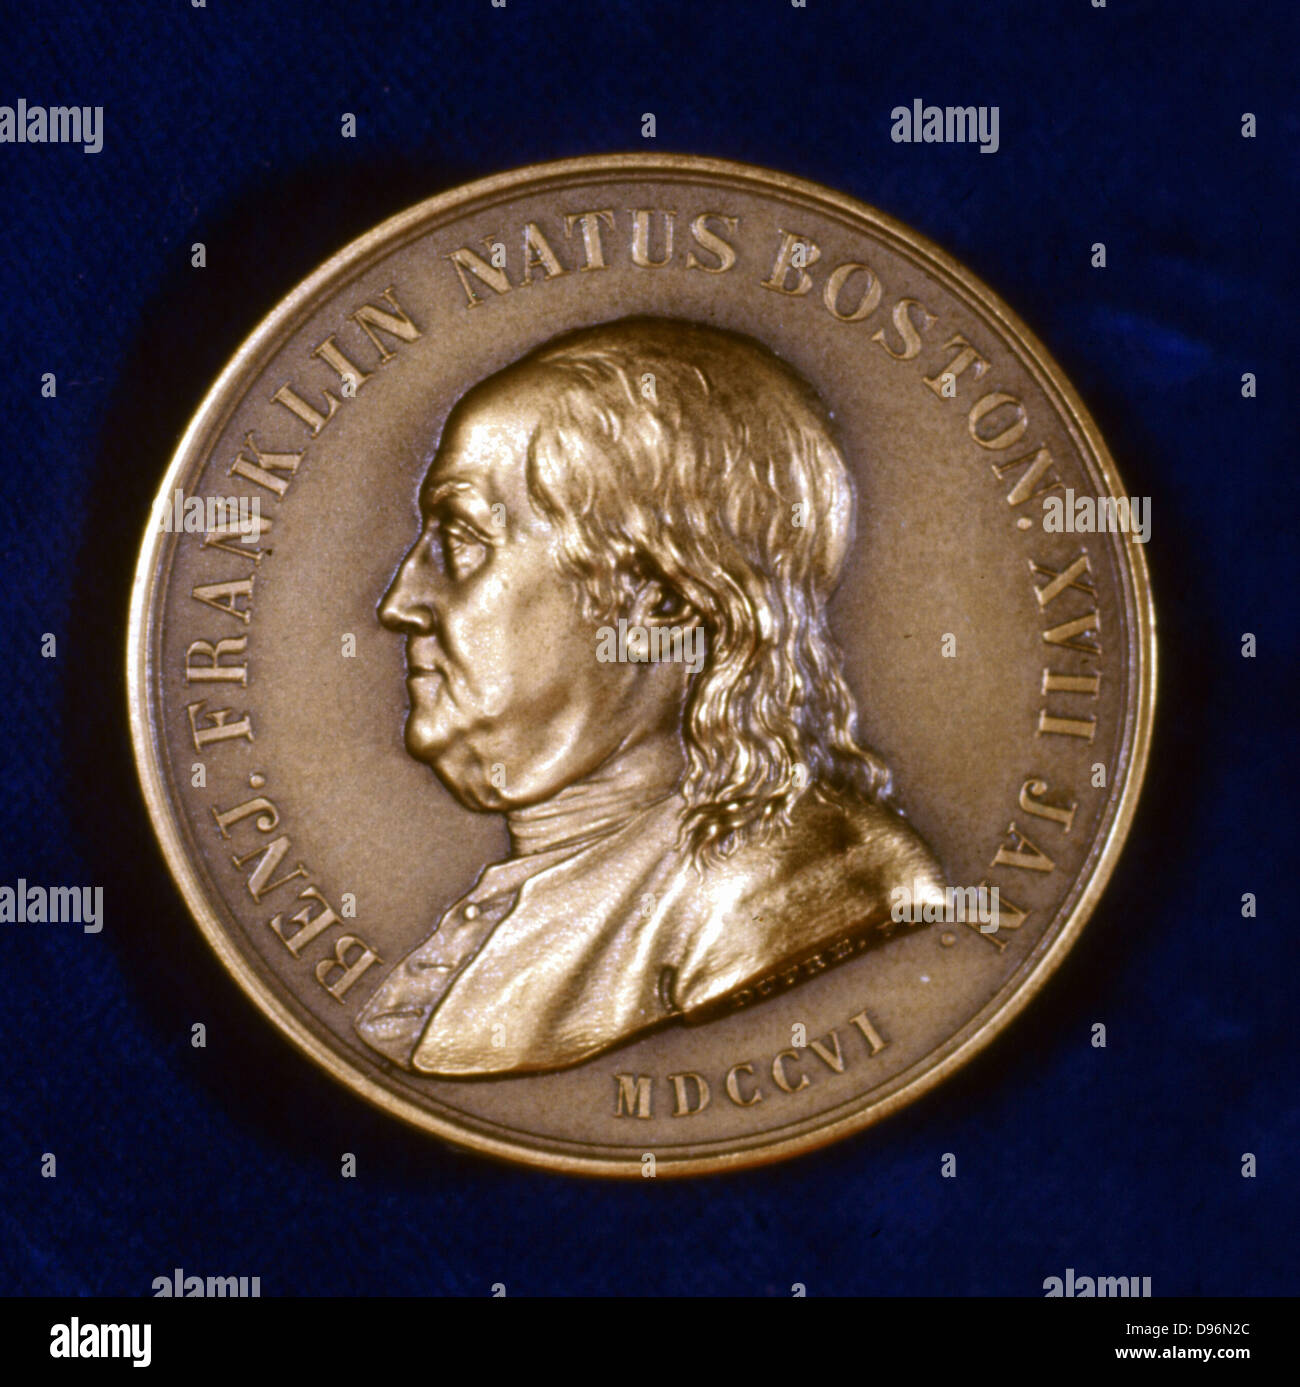 Benjamin Franklin (1706-1790), inventeur américain, scientifique, diplomate, auteur et éditeur de l'avers d'une médaille commémorative. Banque D'Images